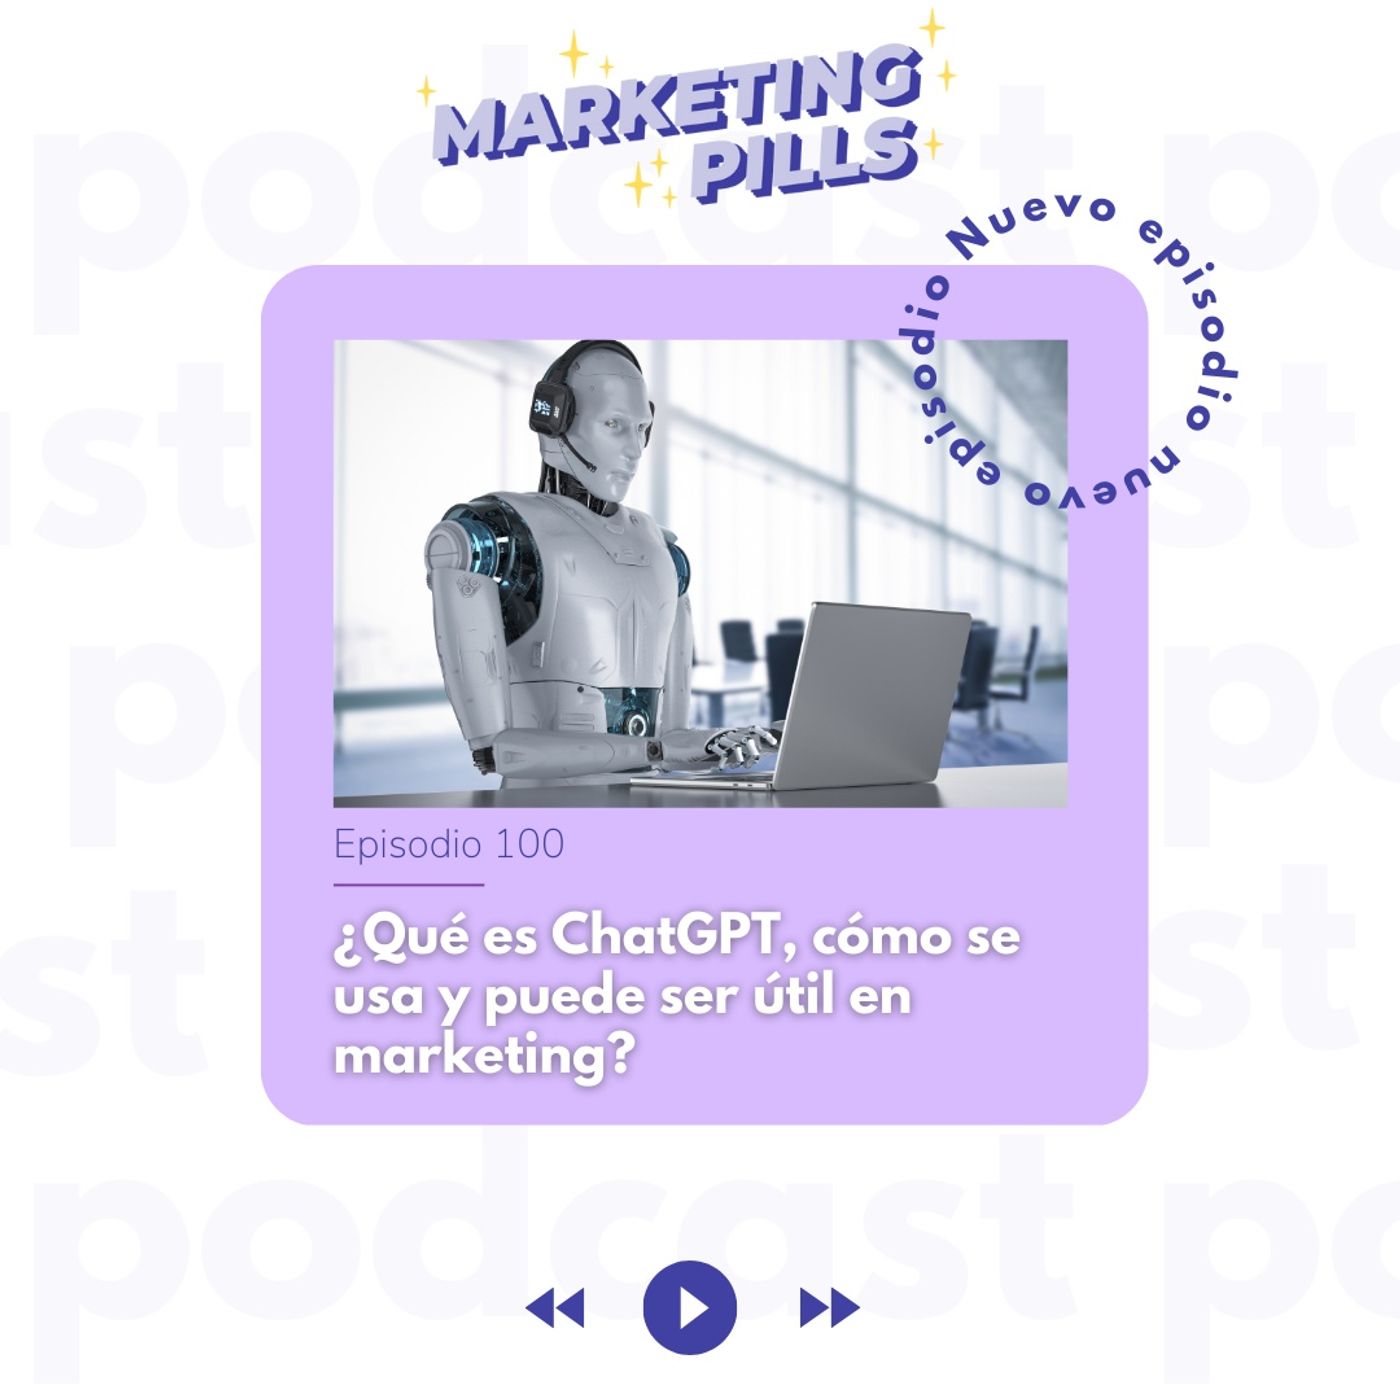 ⚡ Episodio 100 - ¿Qué es ChatGPT, cómo se usa y puede ser útil en marketing?